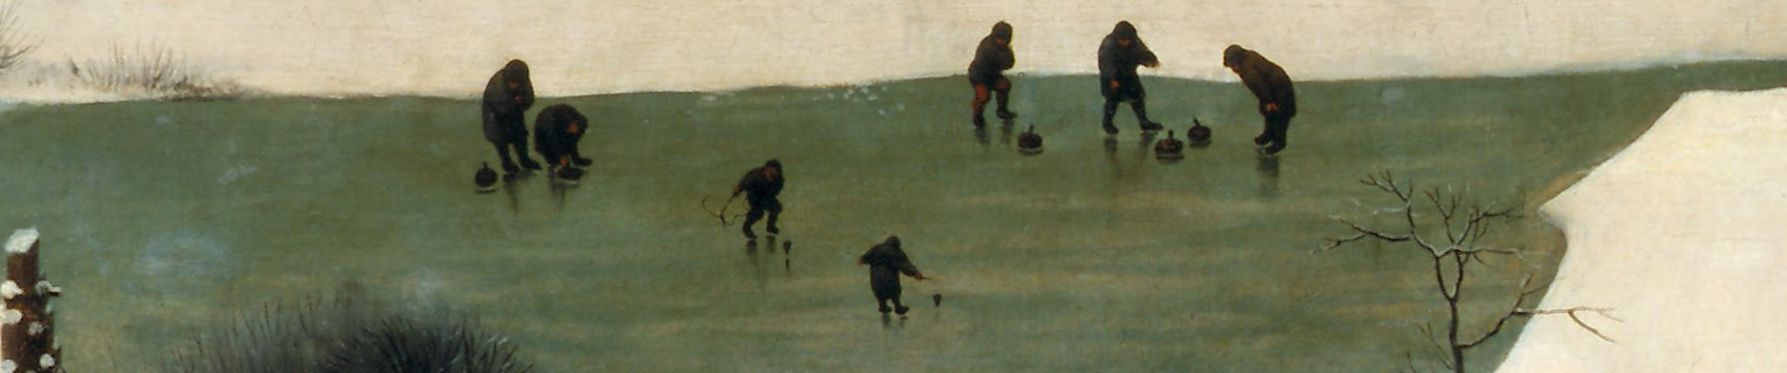 Ausschnitt aus dem Bild von Pieter Bruegel dem Älteren, die Jäger im Schnee: Kinder die mit Peitschenkreiseln auf dem Eis spielen.